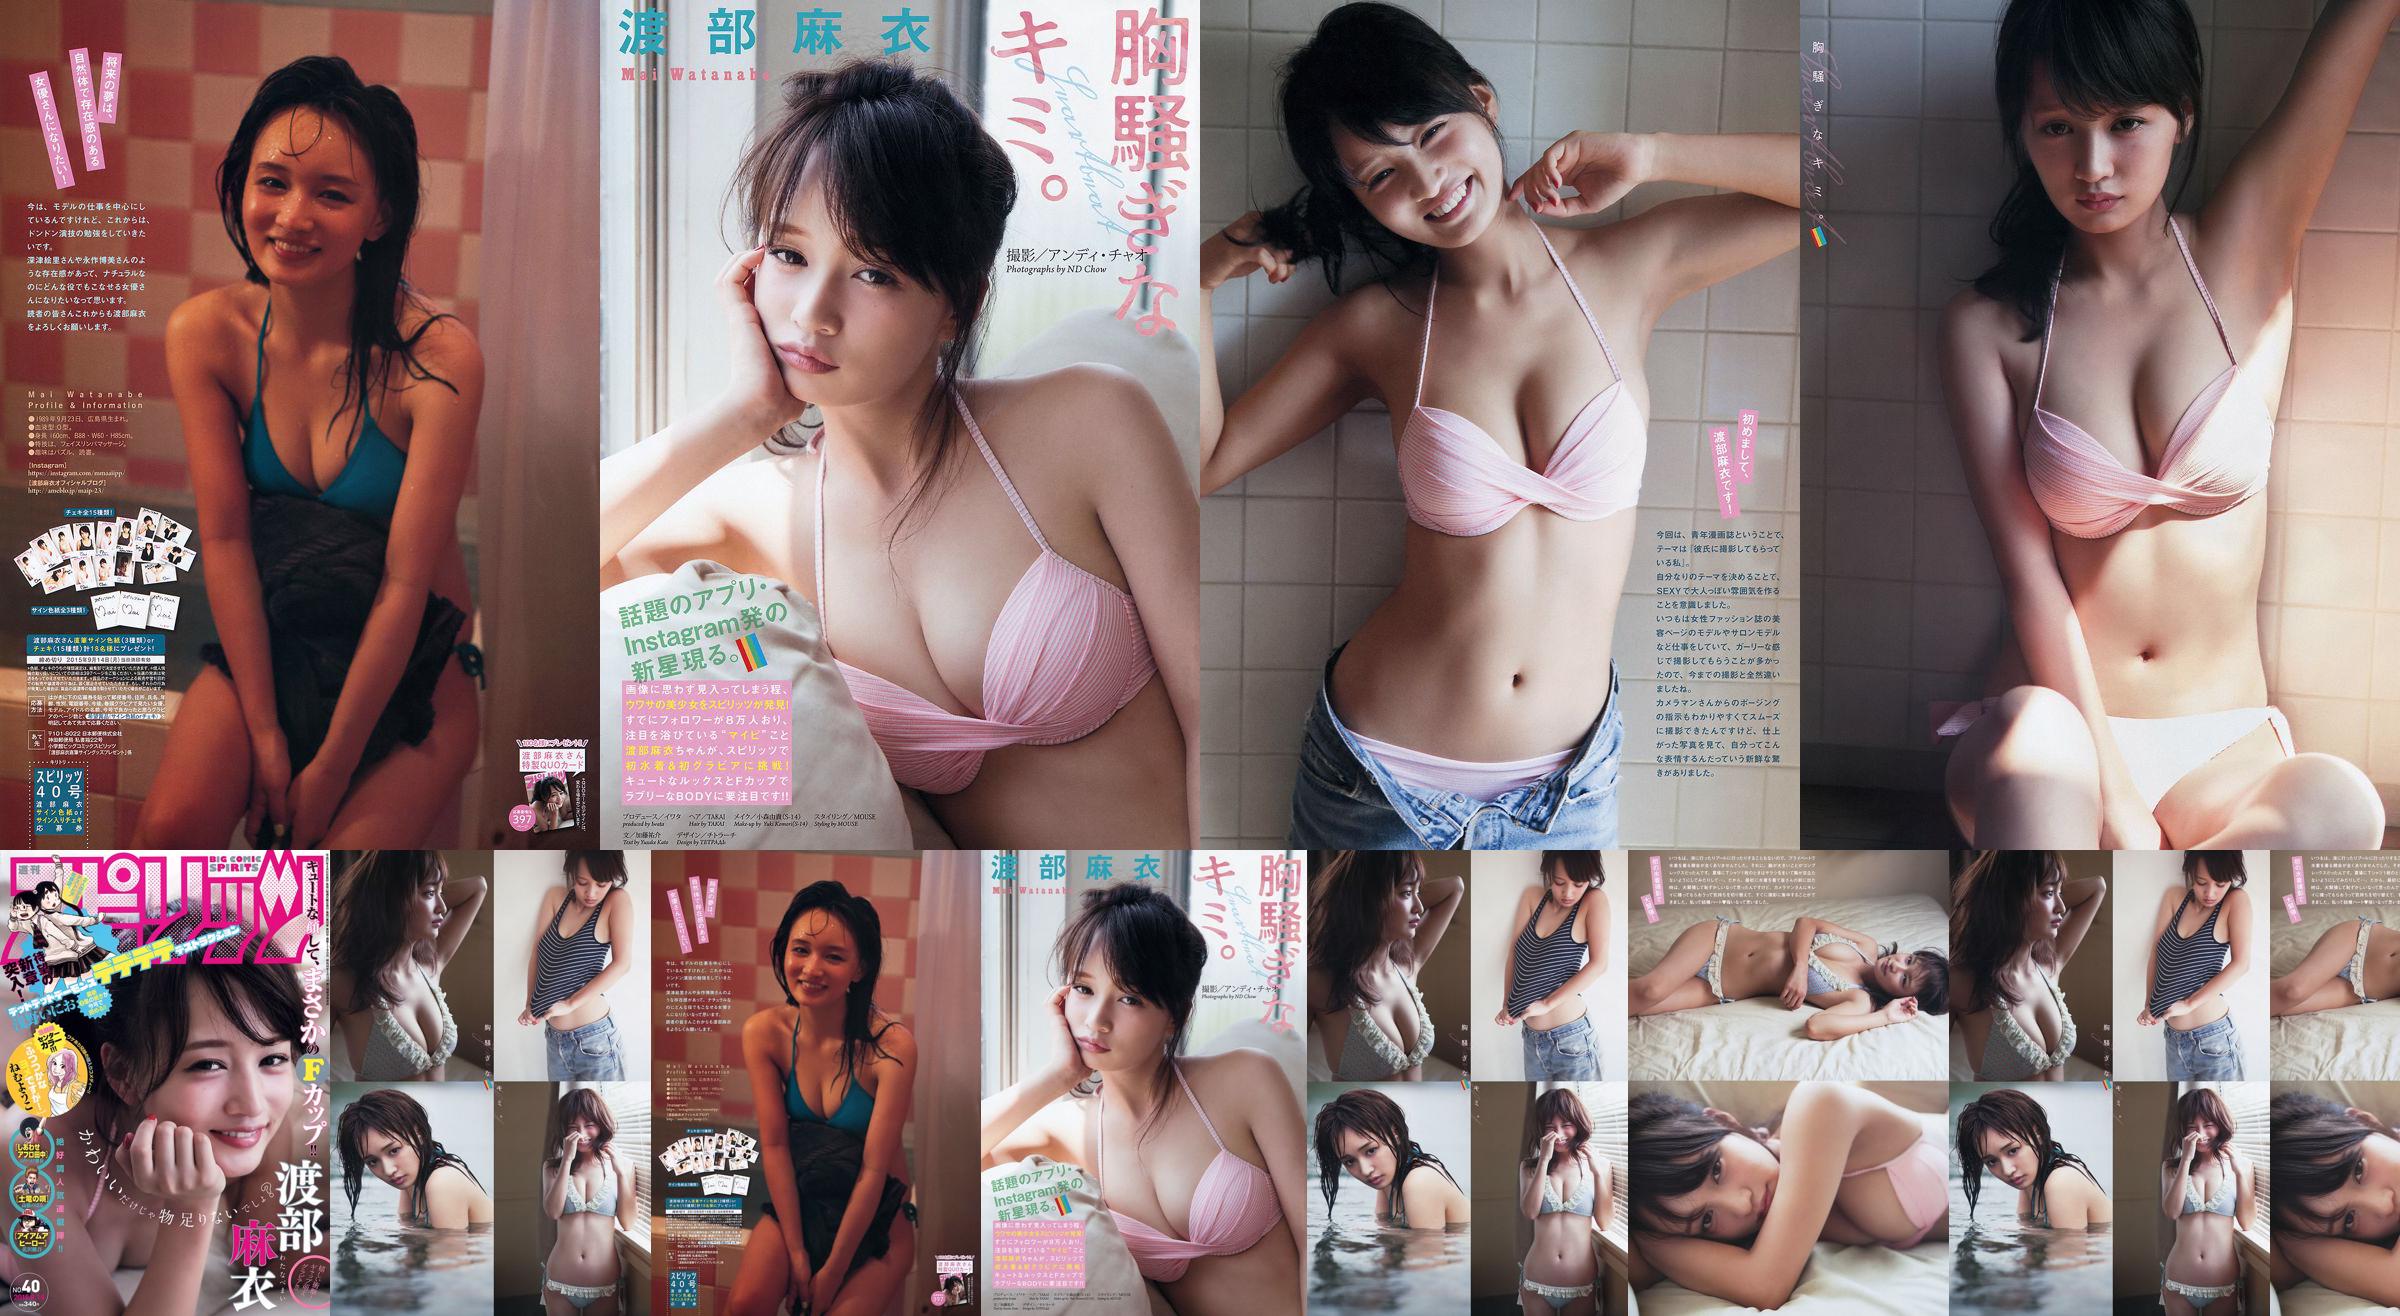 [Weekly Big Comic Spirits] Watanabe Mai 2015 No.40 Photo Magazine No.f9de91 Pagina 2